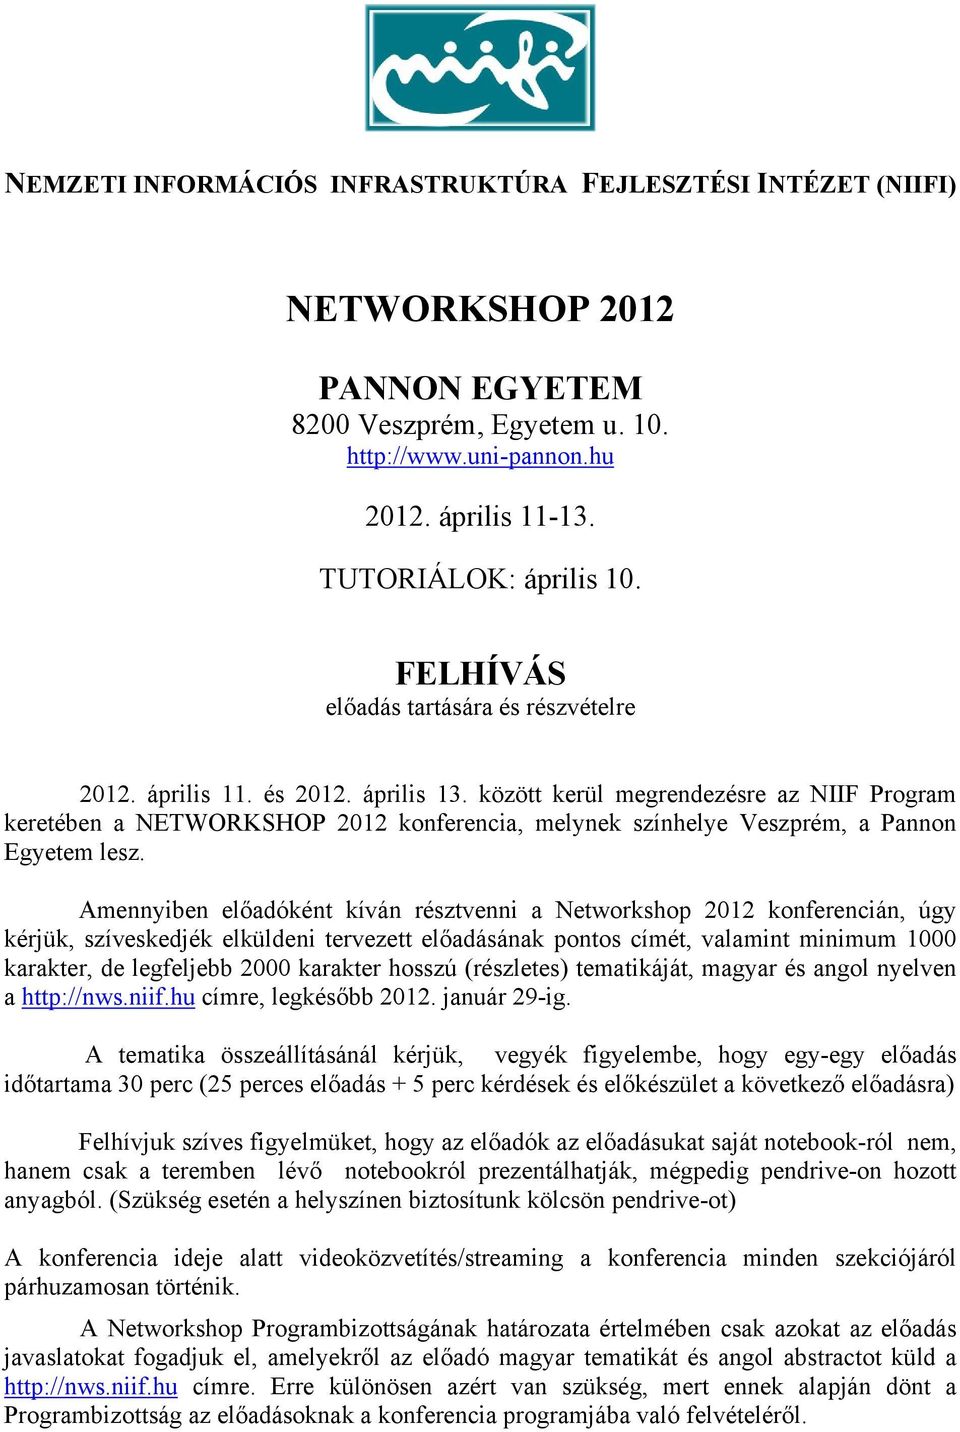 között kerül megrendezésre az NIIF Program keretében a NETWORKSHOP 2012 konferencia, melynek színhelye Veszprém, a Pannon Egyetem lesz.